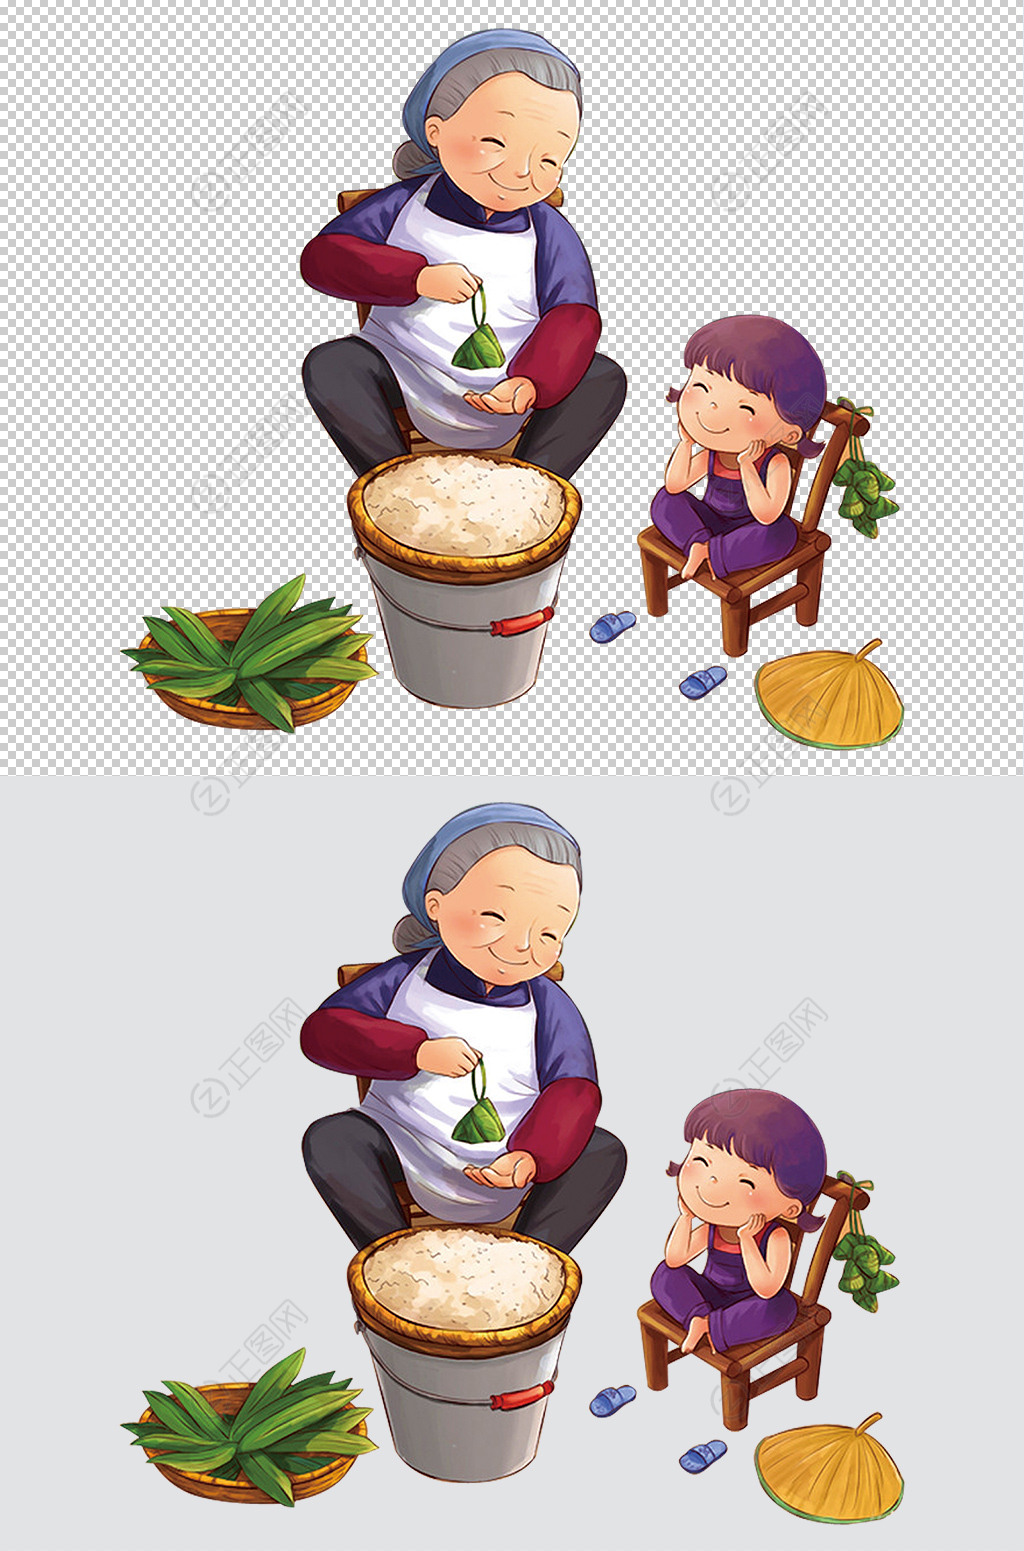 老奶奶和小孙女孩端午节一起包粽子